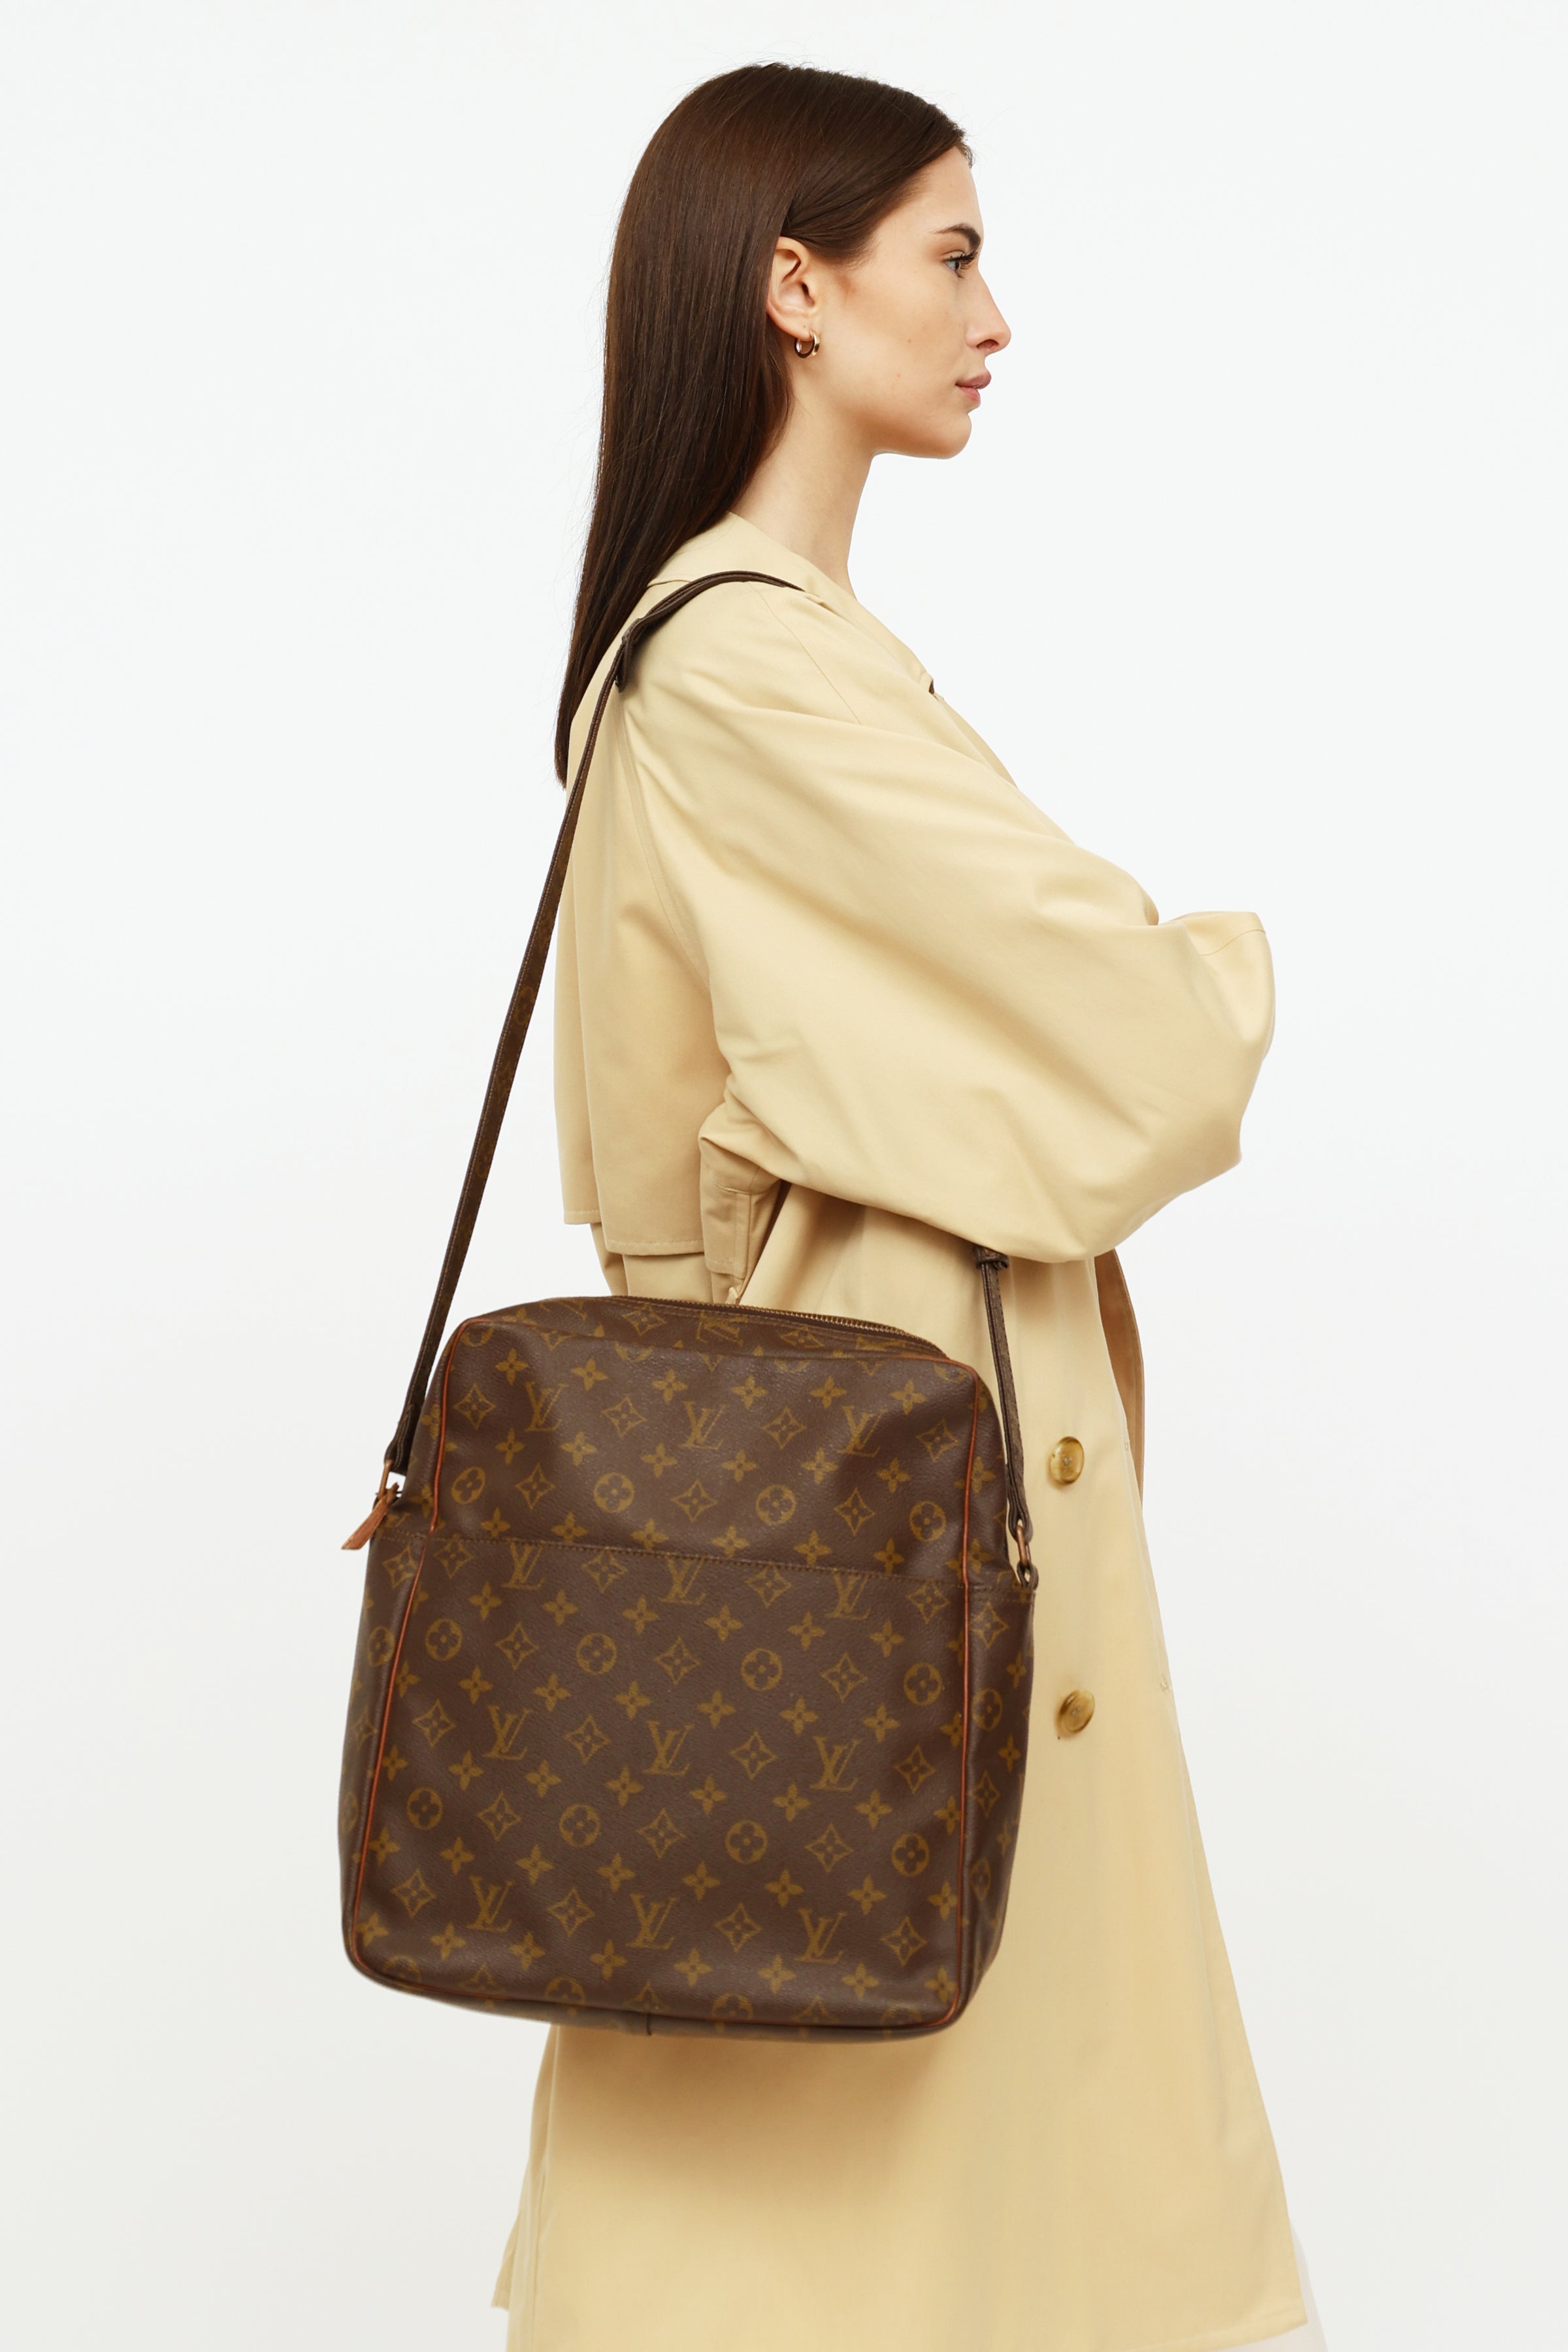 Louis Vuitton Monogram Canvas Messenger Bag on SALE